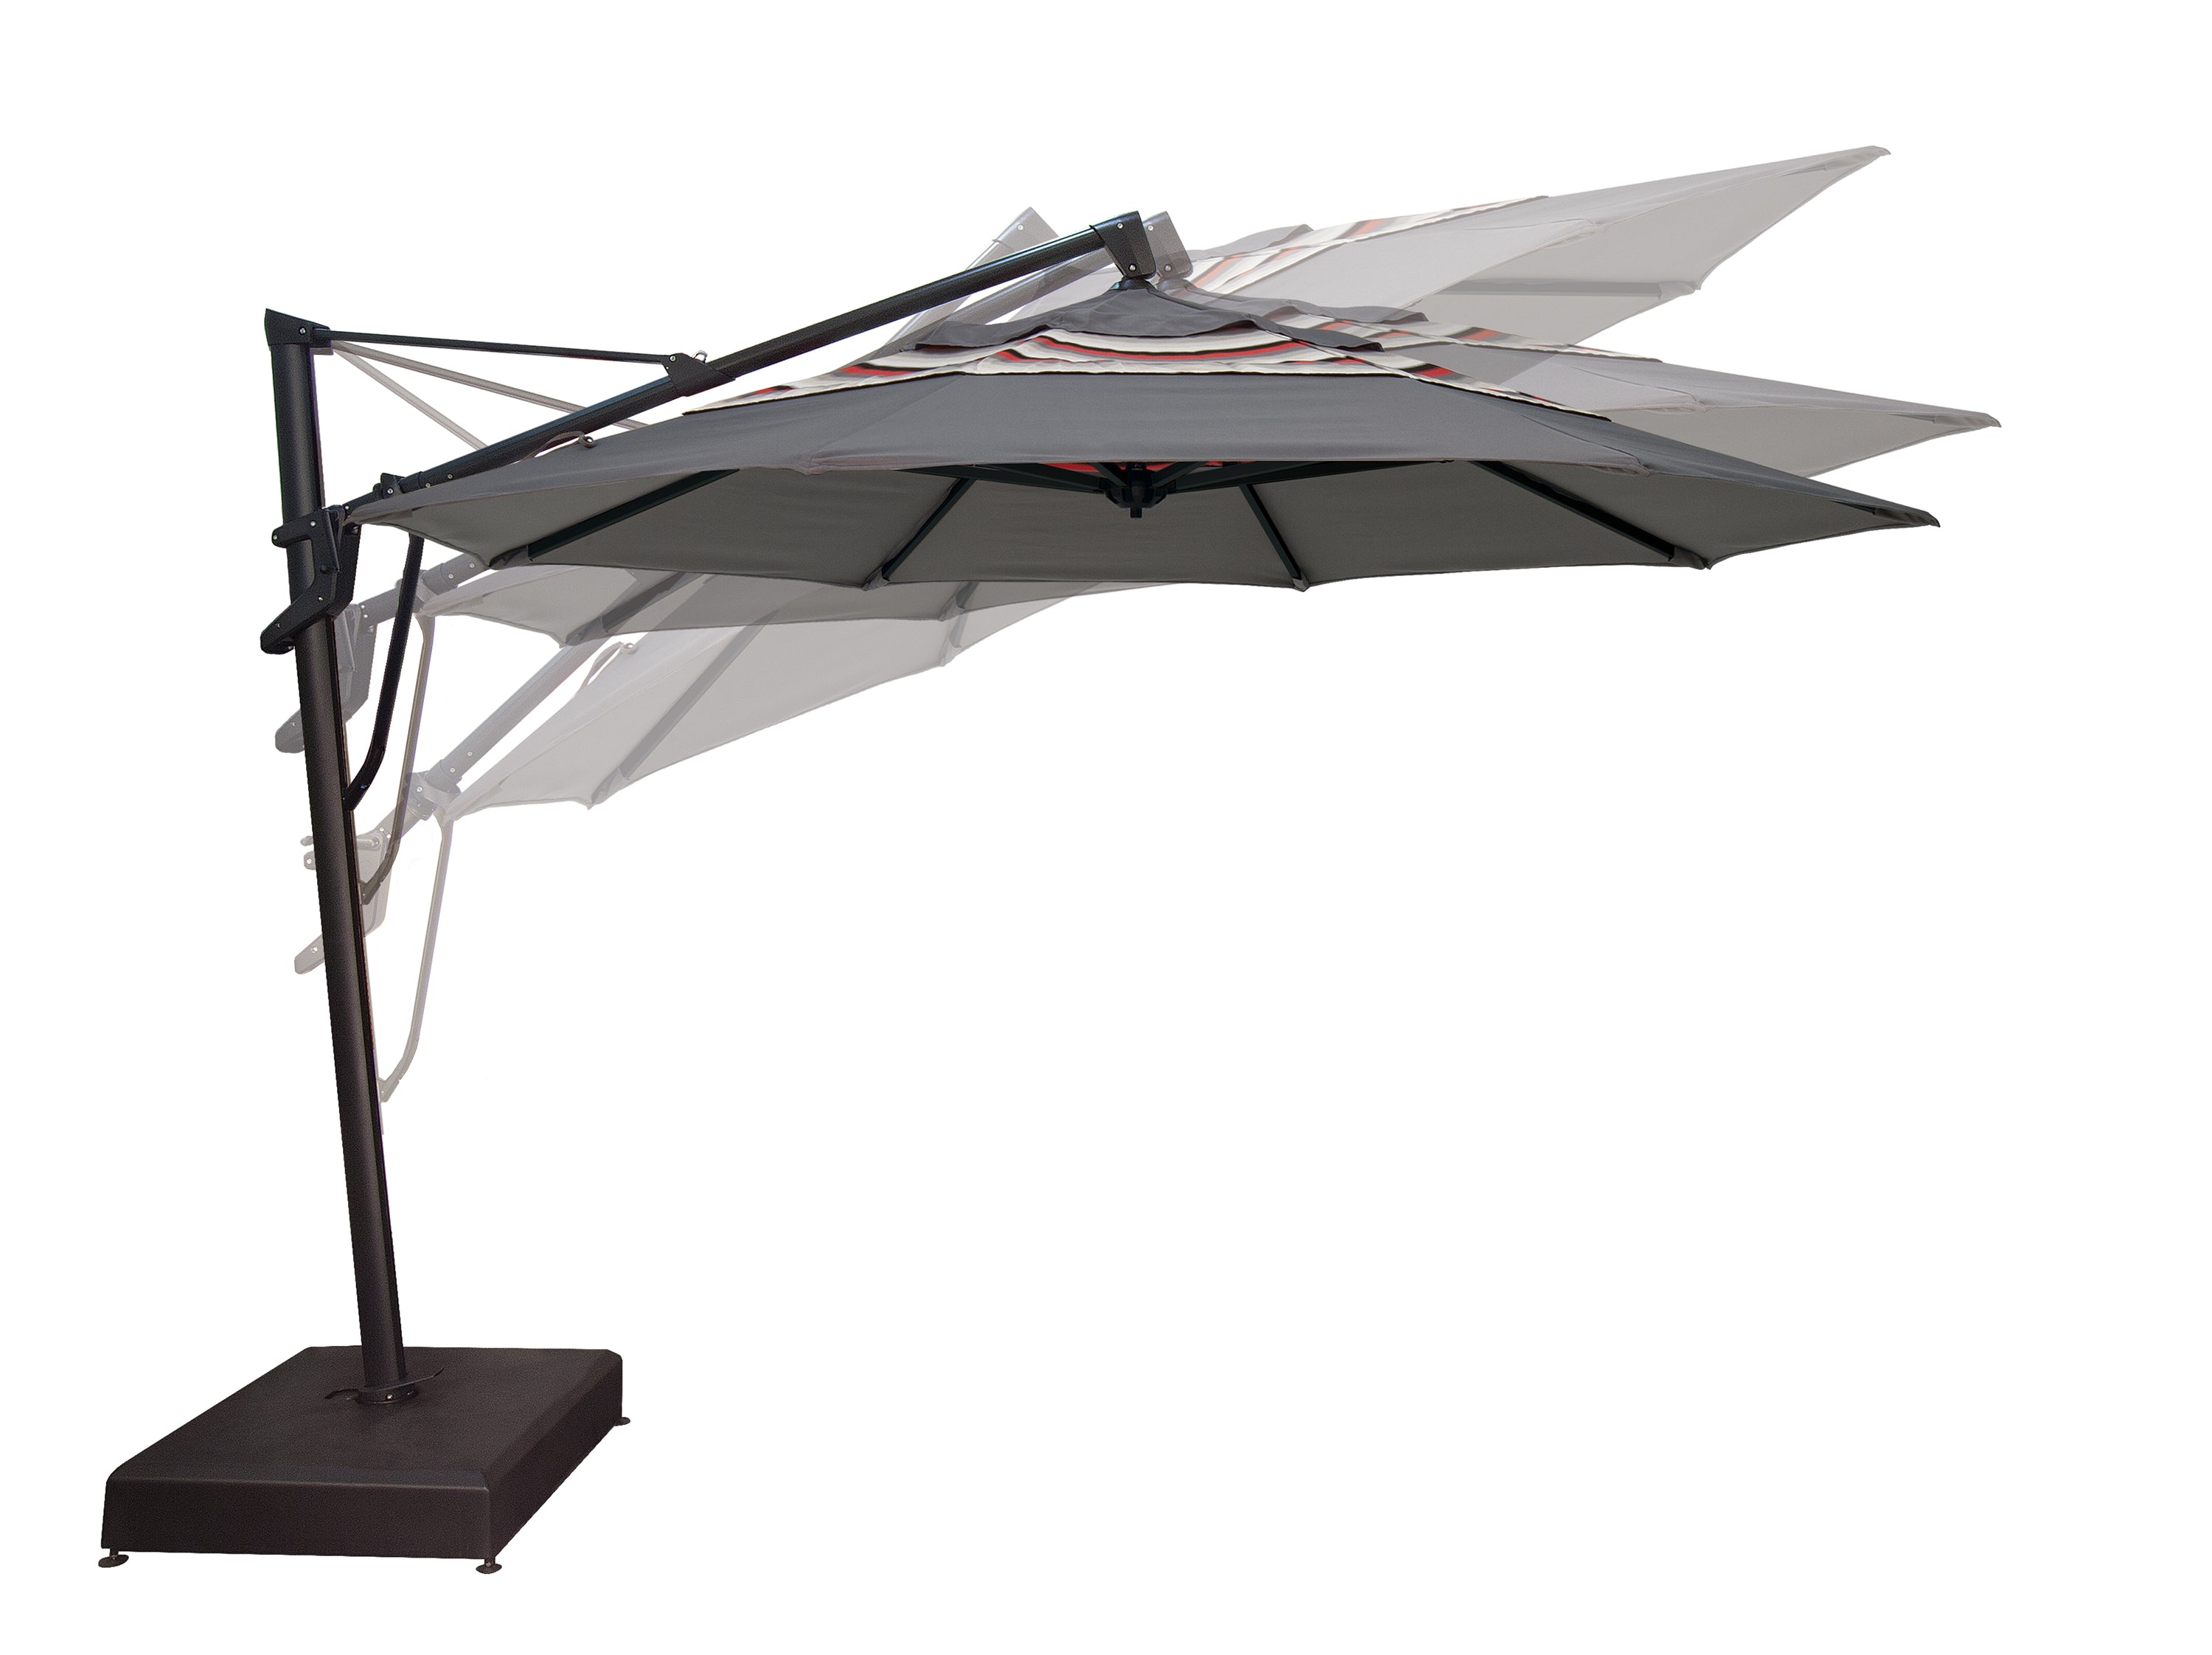 13' AKZ PLUS - Octagonal Cantilever Umbrella Quick Ship by Treasure Garden